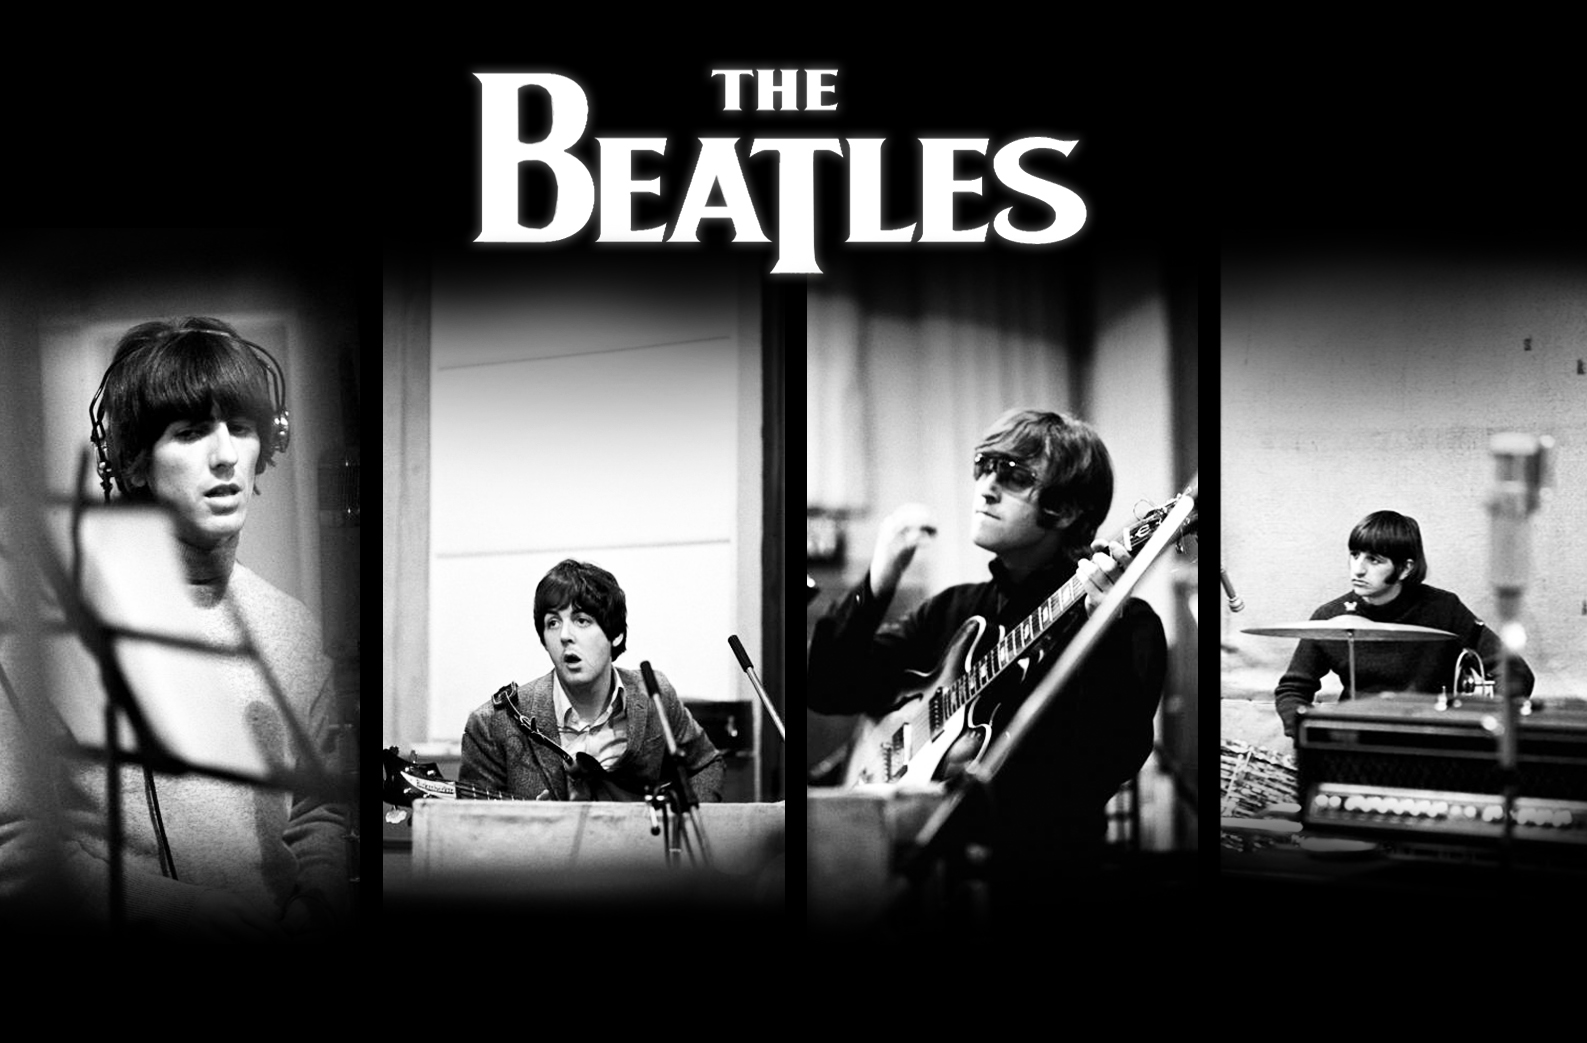 The Beatles hd Wallpapers ImageBankbiz